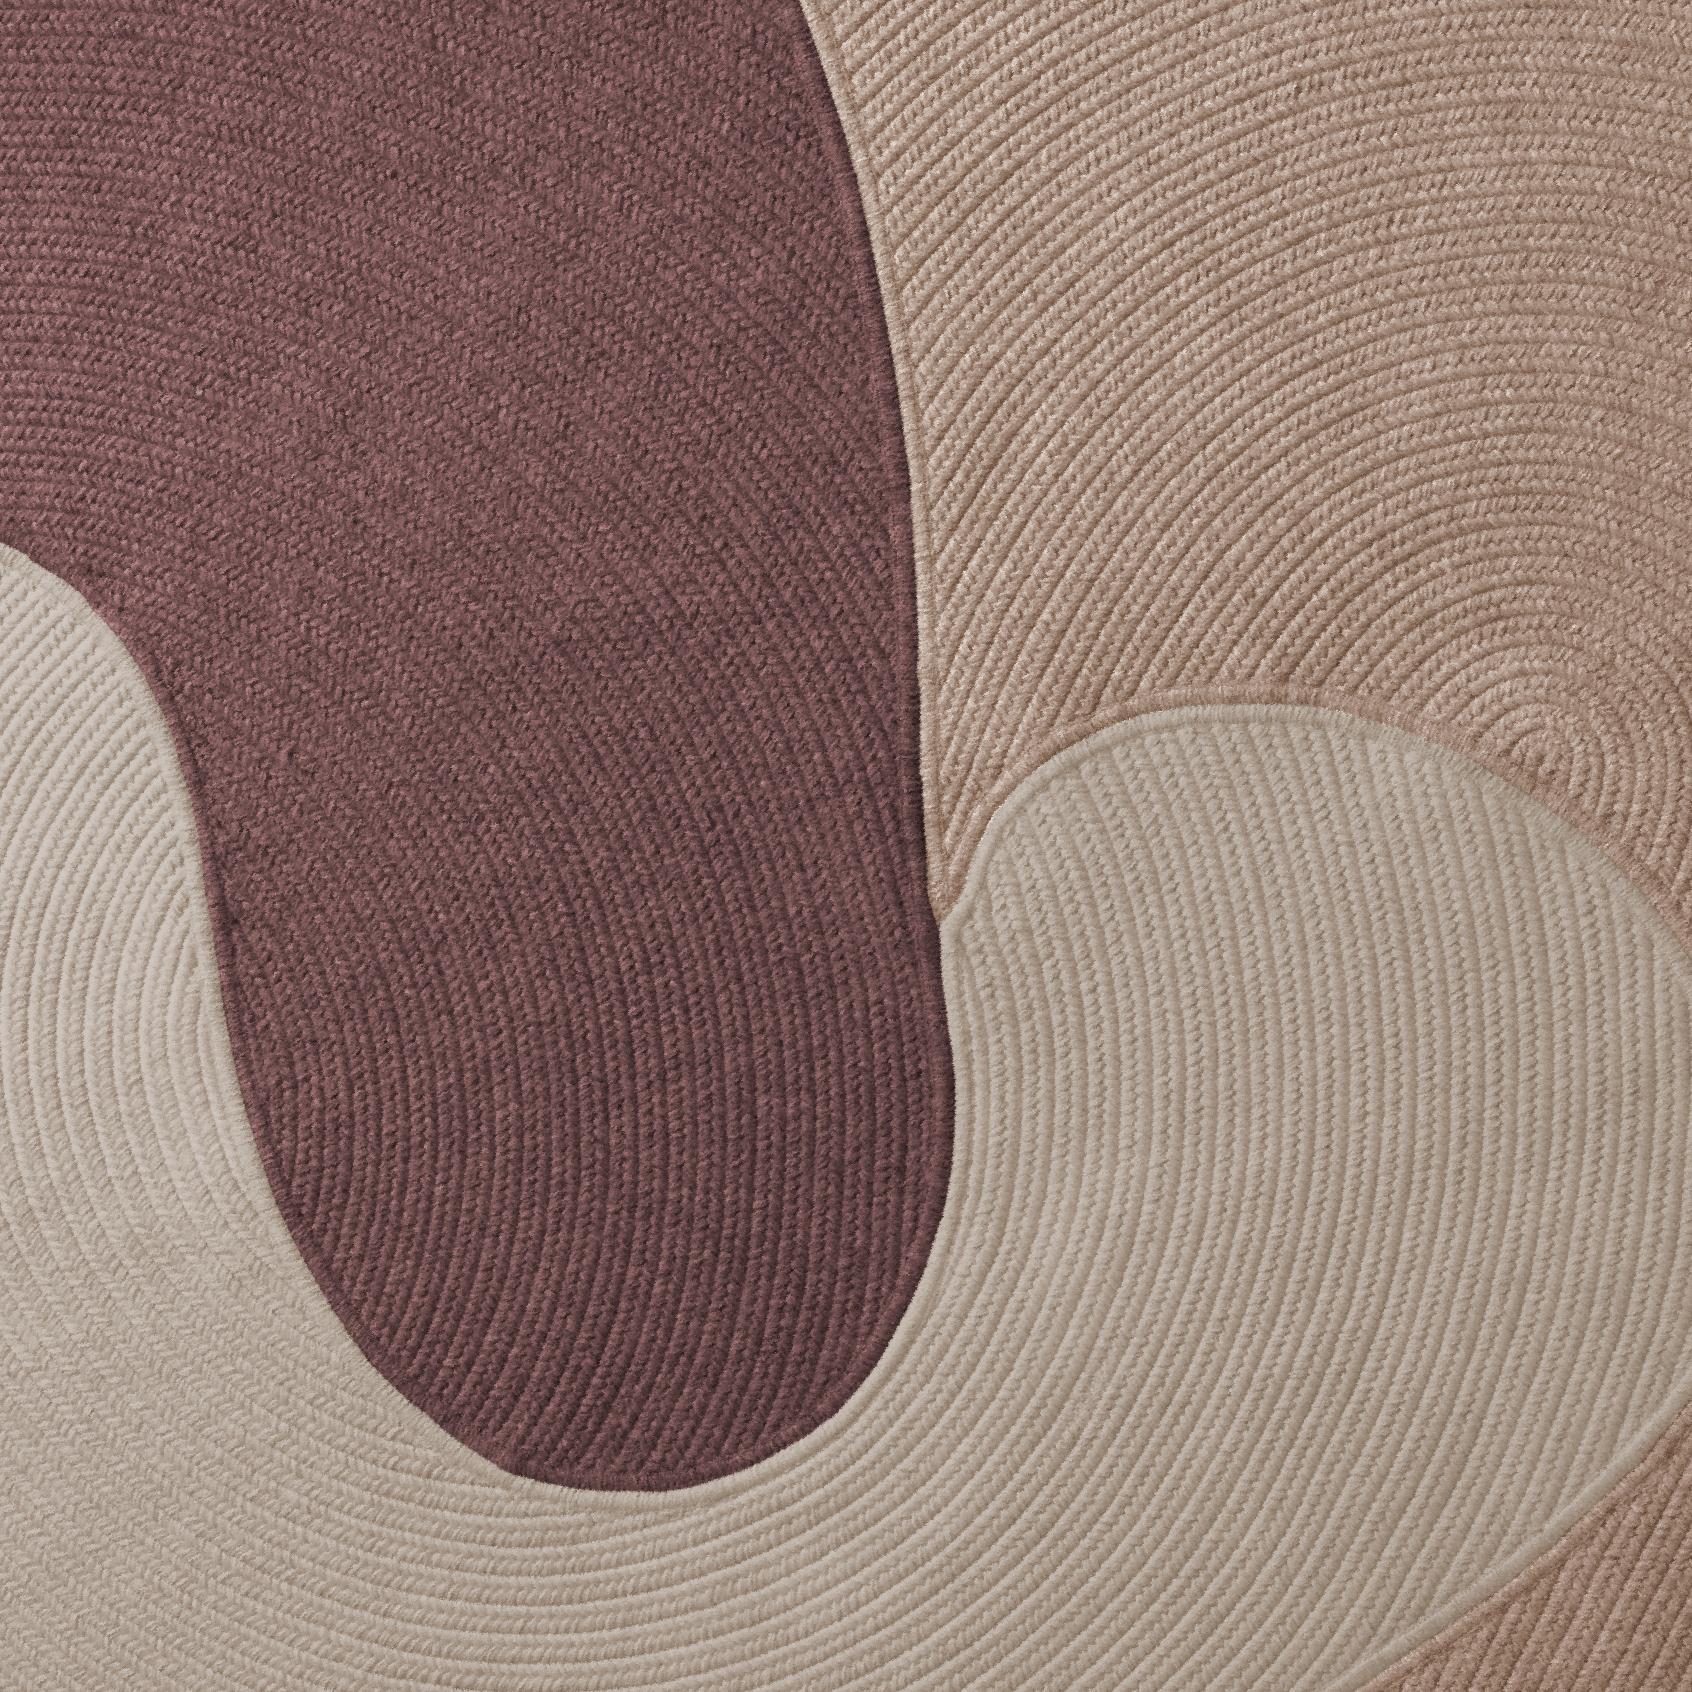 Diese Auflistung ist für einen 6 x 8 Teppich in den Farben, die im ersten Bild gezeigt werden, plus ein rug pad für Gebrauch auf harten Oberflächen.

Wir bieten eine Reihe von verschiedenen Farben an. Wir können die Farben des fotografierten